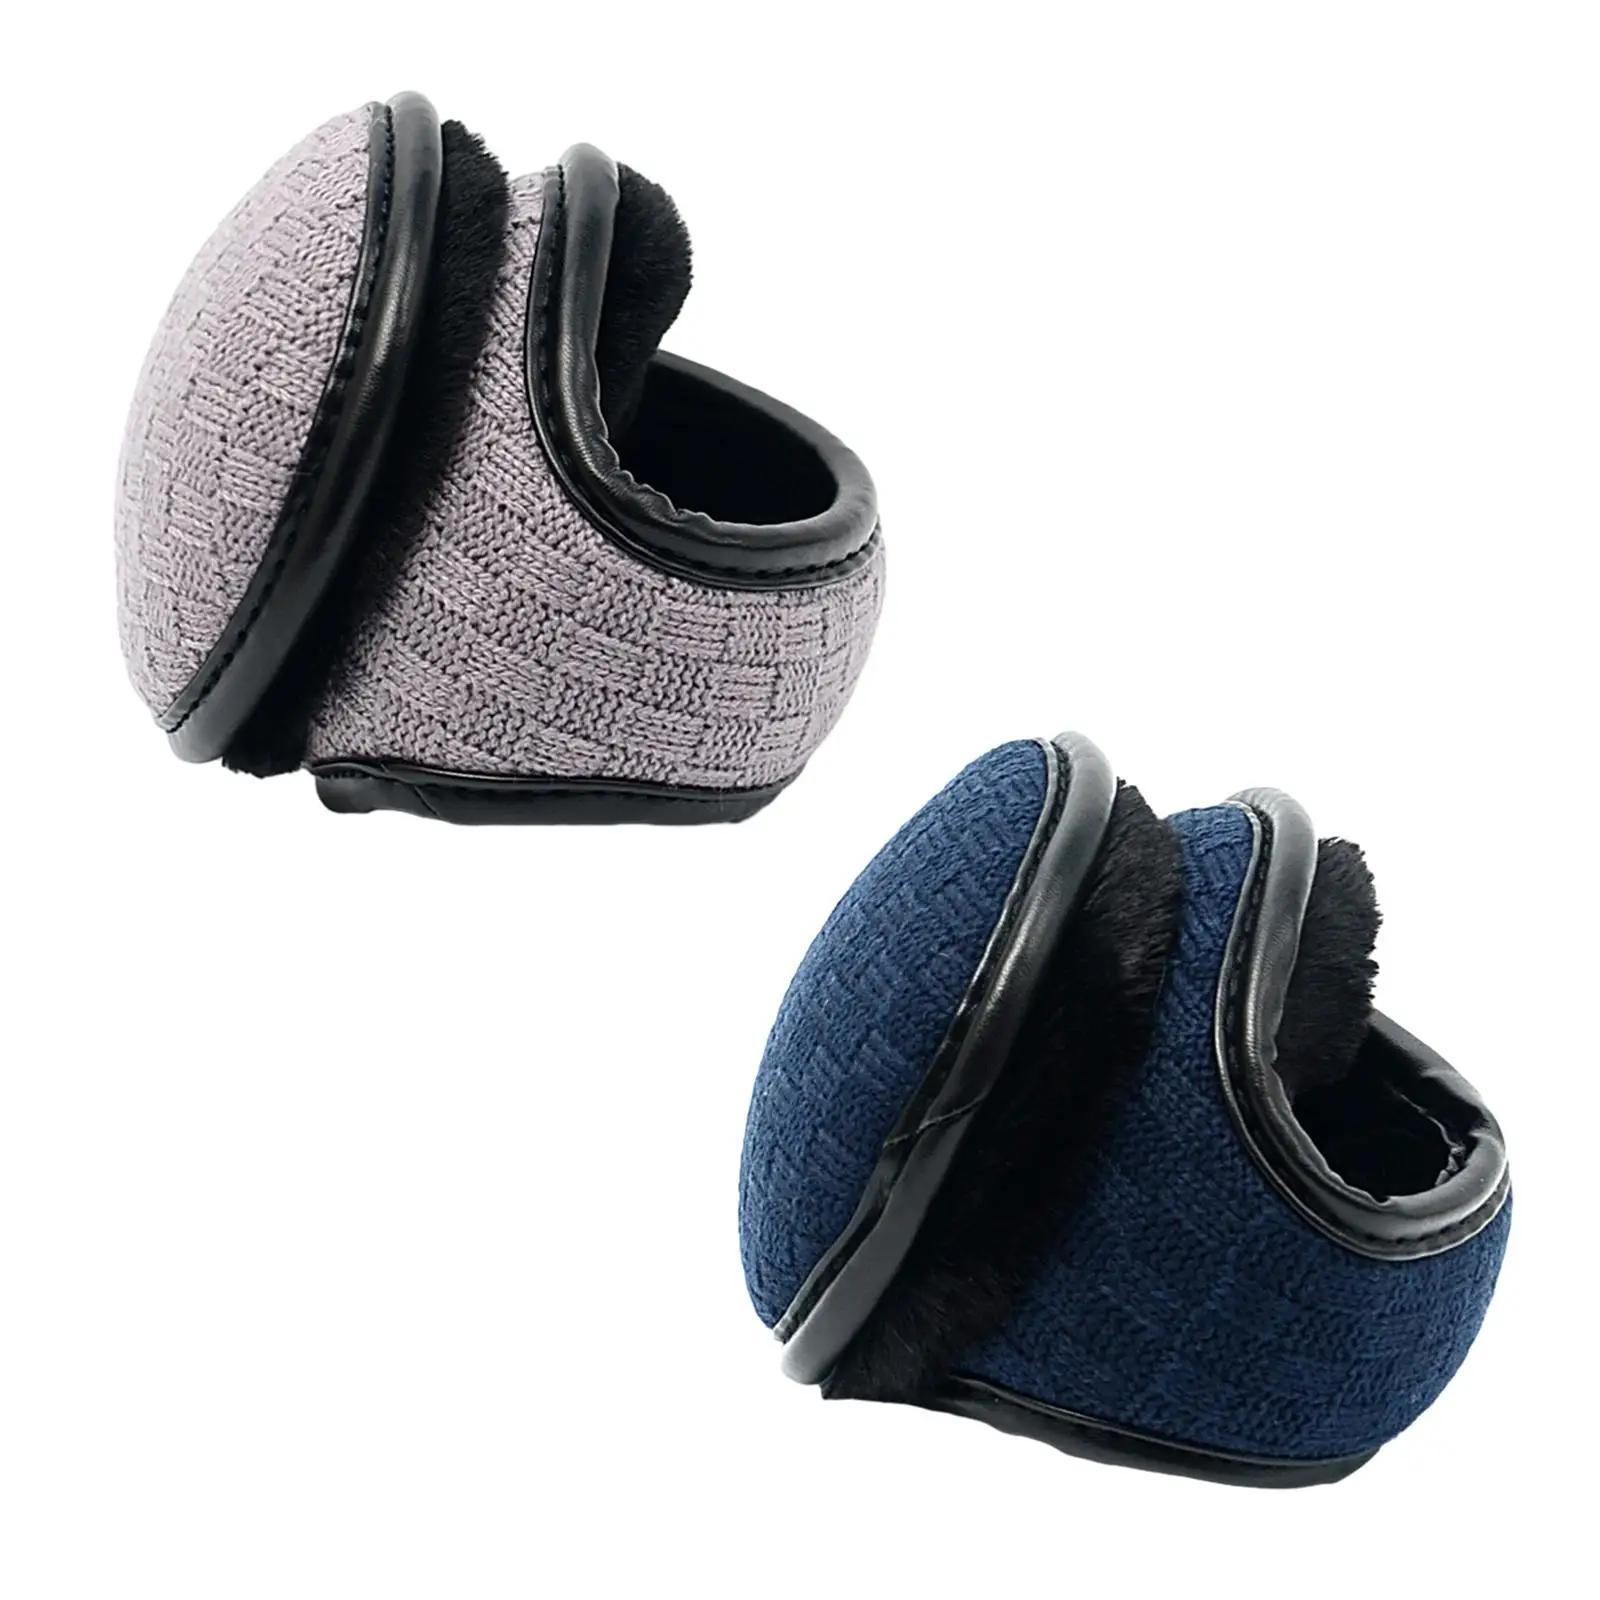 Winter Ear Warmers Foldable Earmuffs Comfortable Ear Cover for Men Women